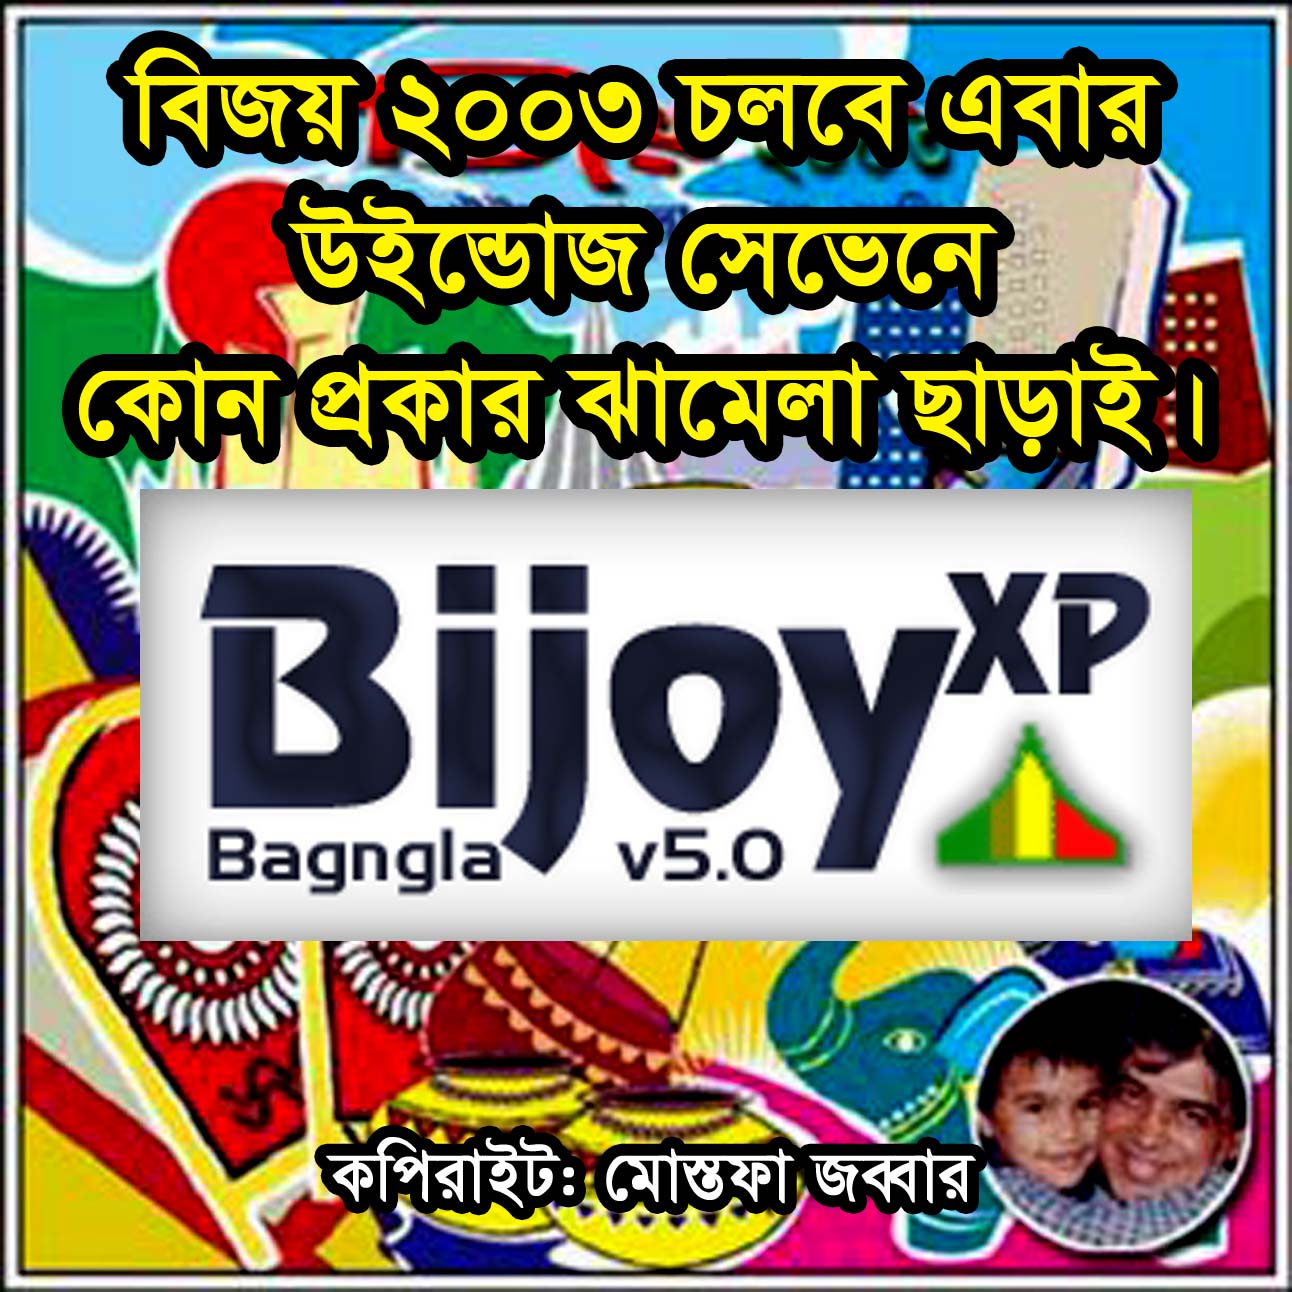 bangla fonts download 2017